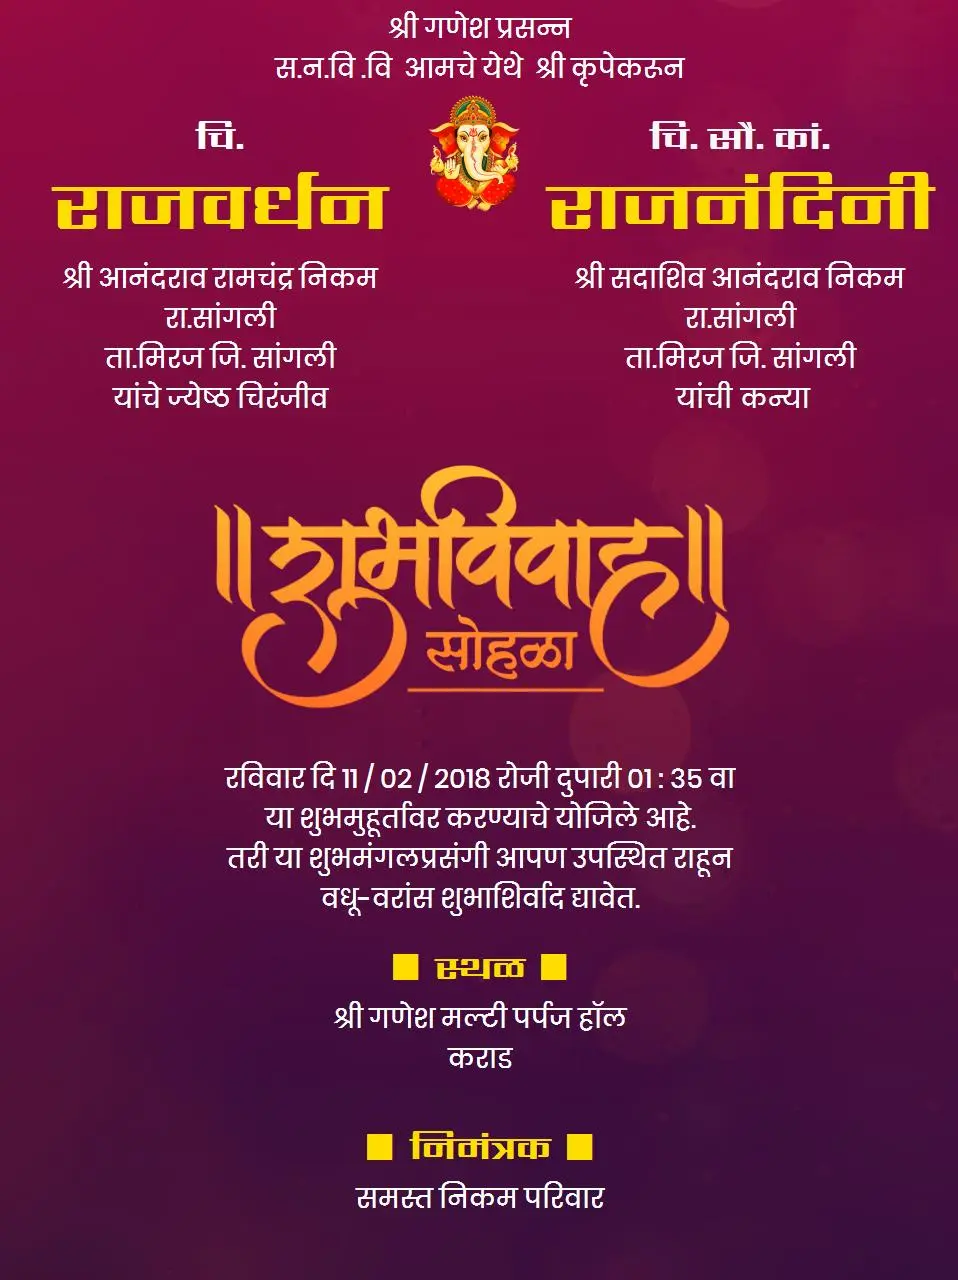 Marathi Wedding invitation